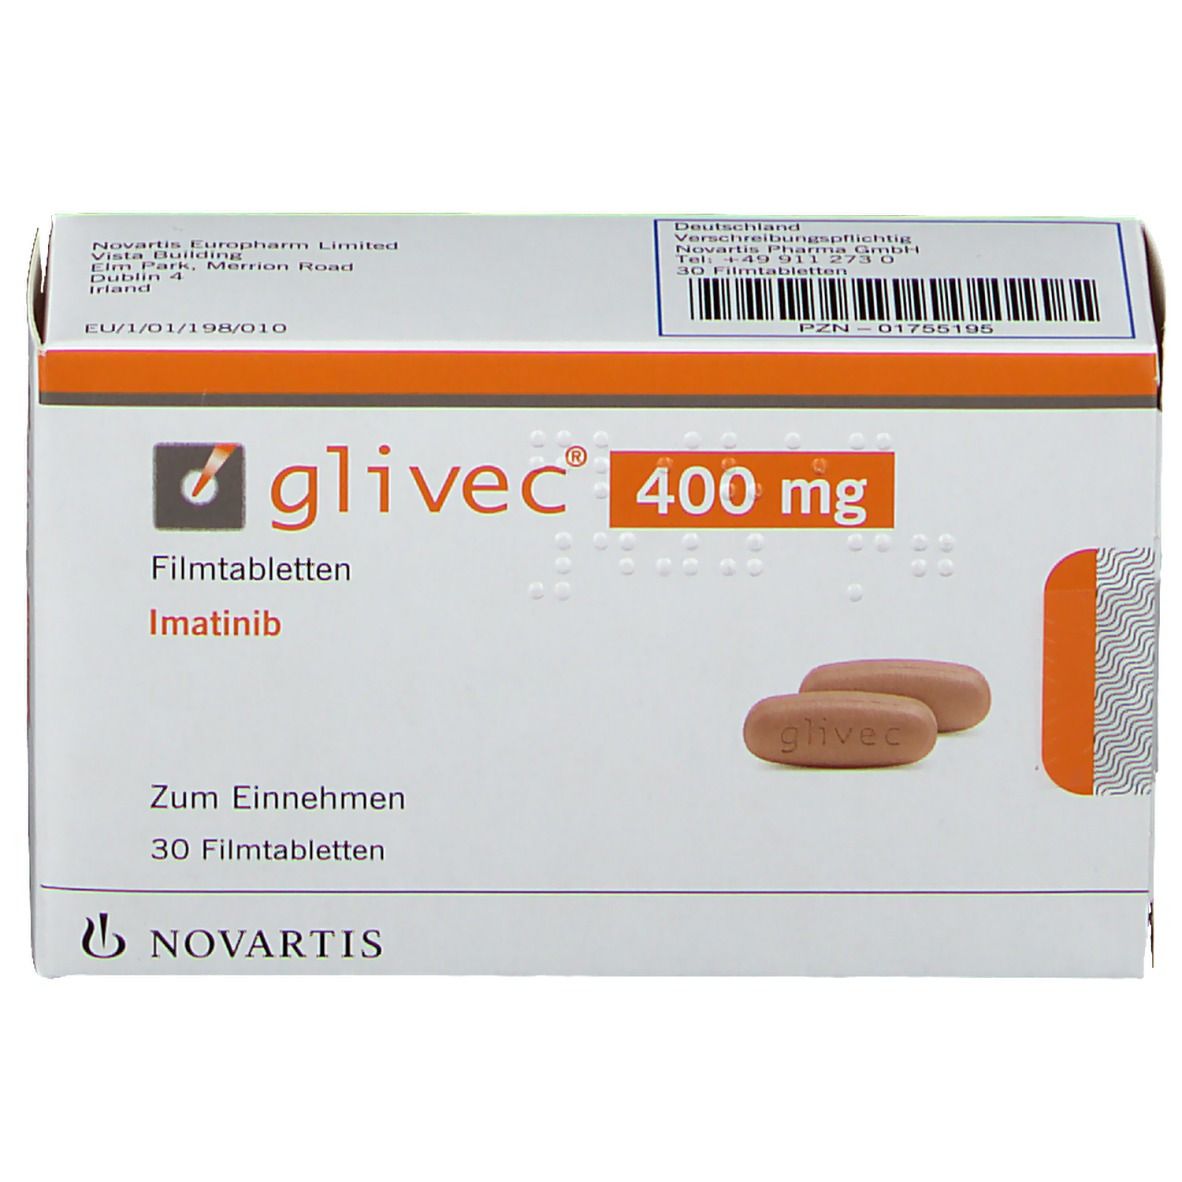 Glivec® 400 mg